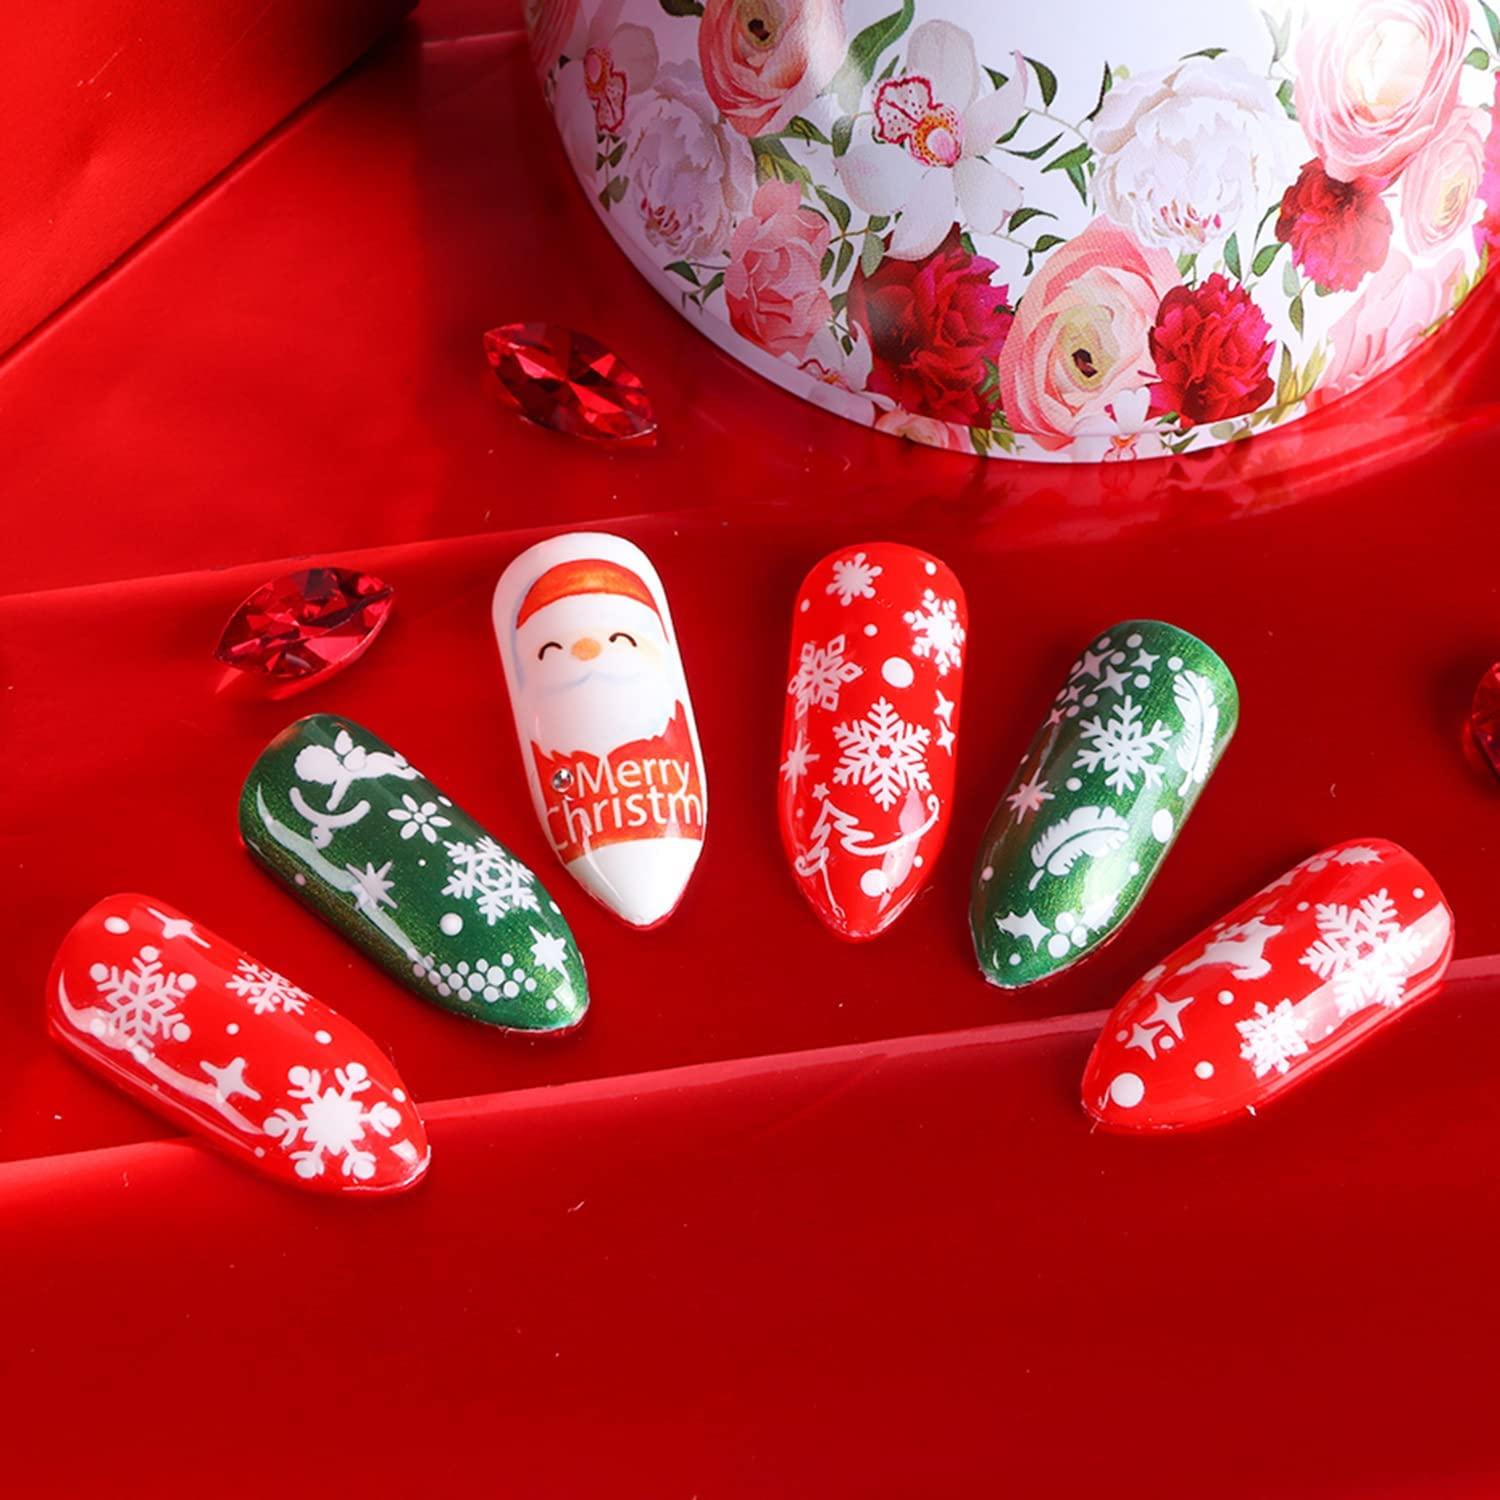 Chritmas nails with 3D santa claus | Santa nails, Nails, Christmas nails